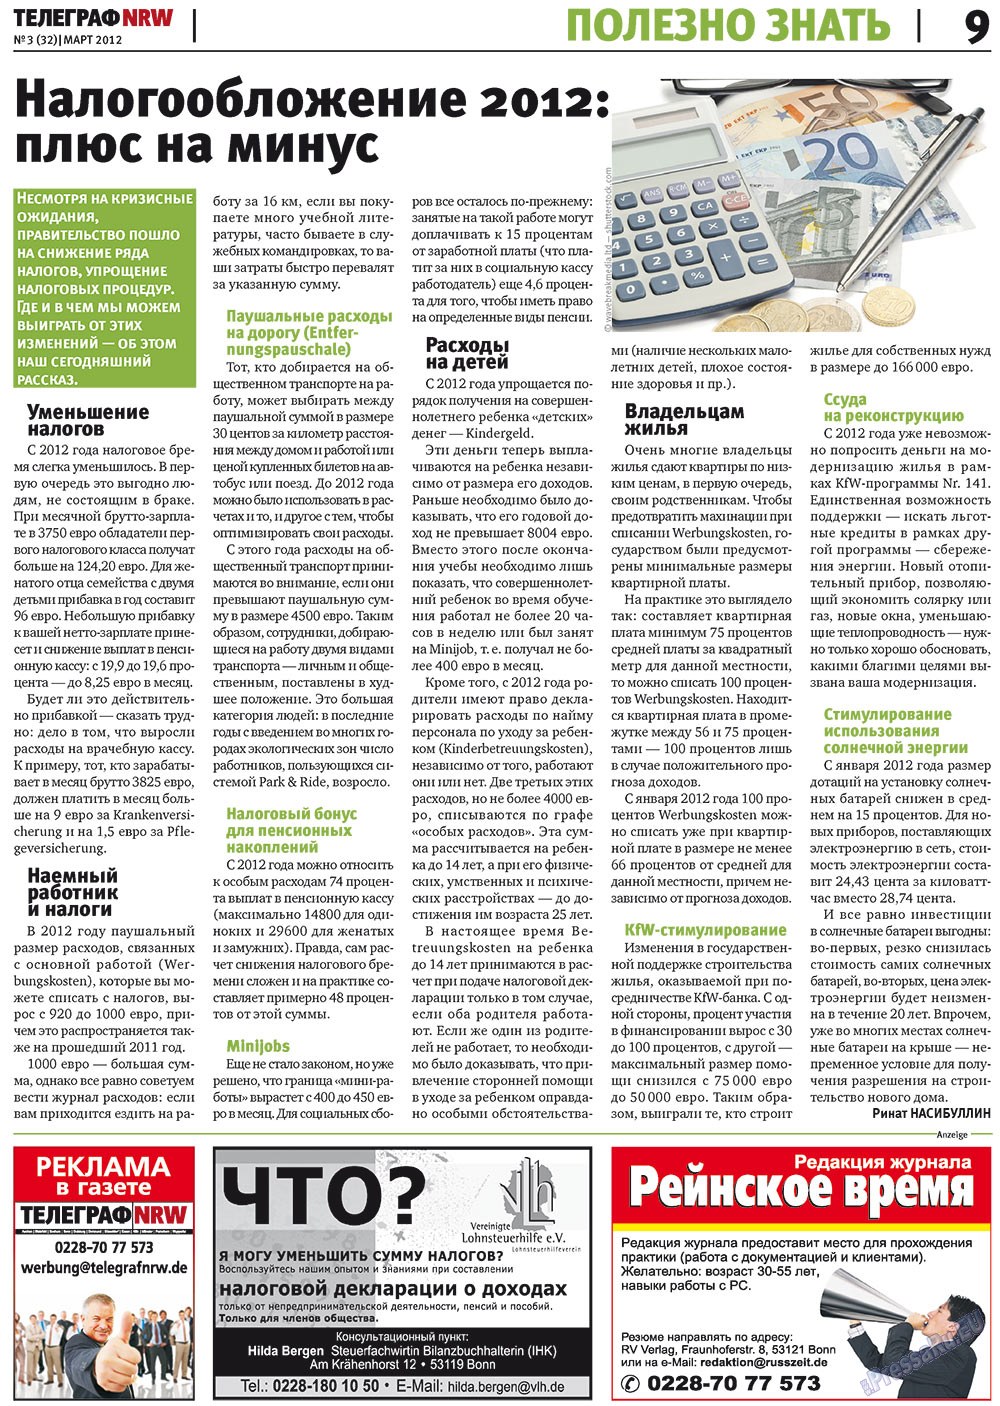 Телеграф NRW (газета). 2012 год, номер 3, стр. 9